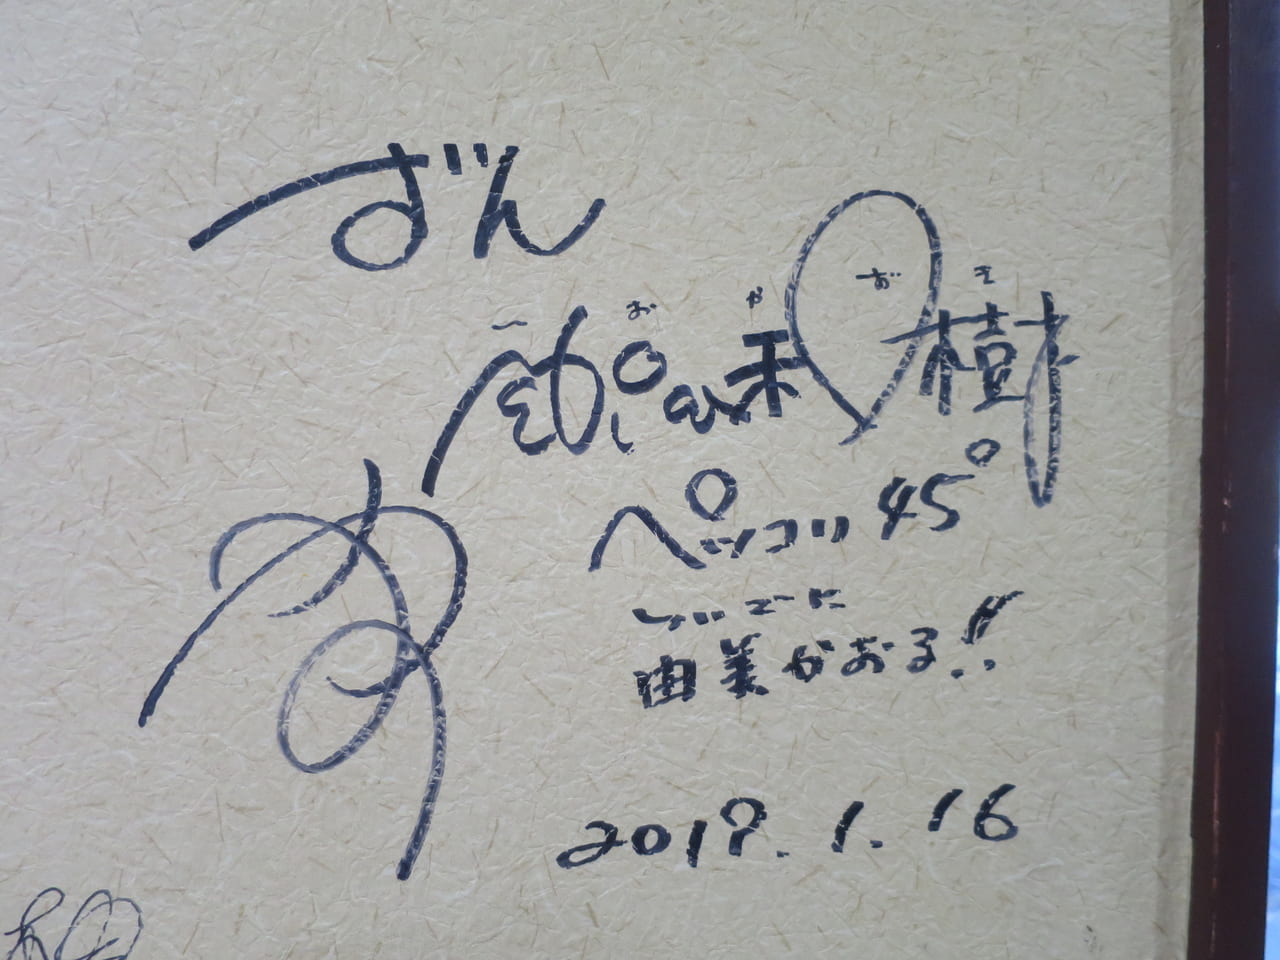 戸越公園KAZU飯尾さんサイン